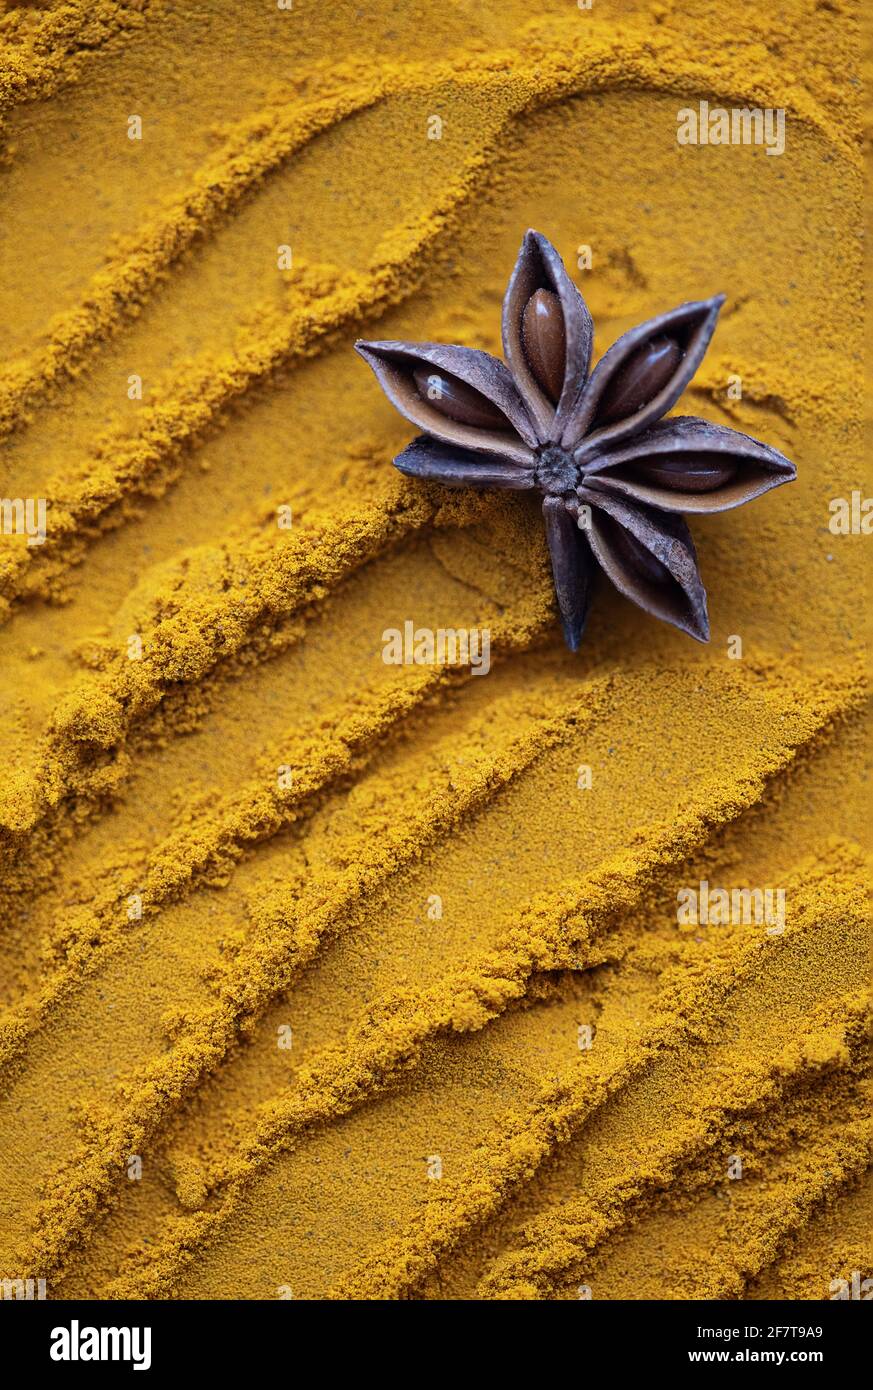 Anise star on turmeric sand, yellow curcuma Stock Photo